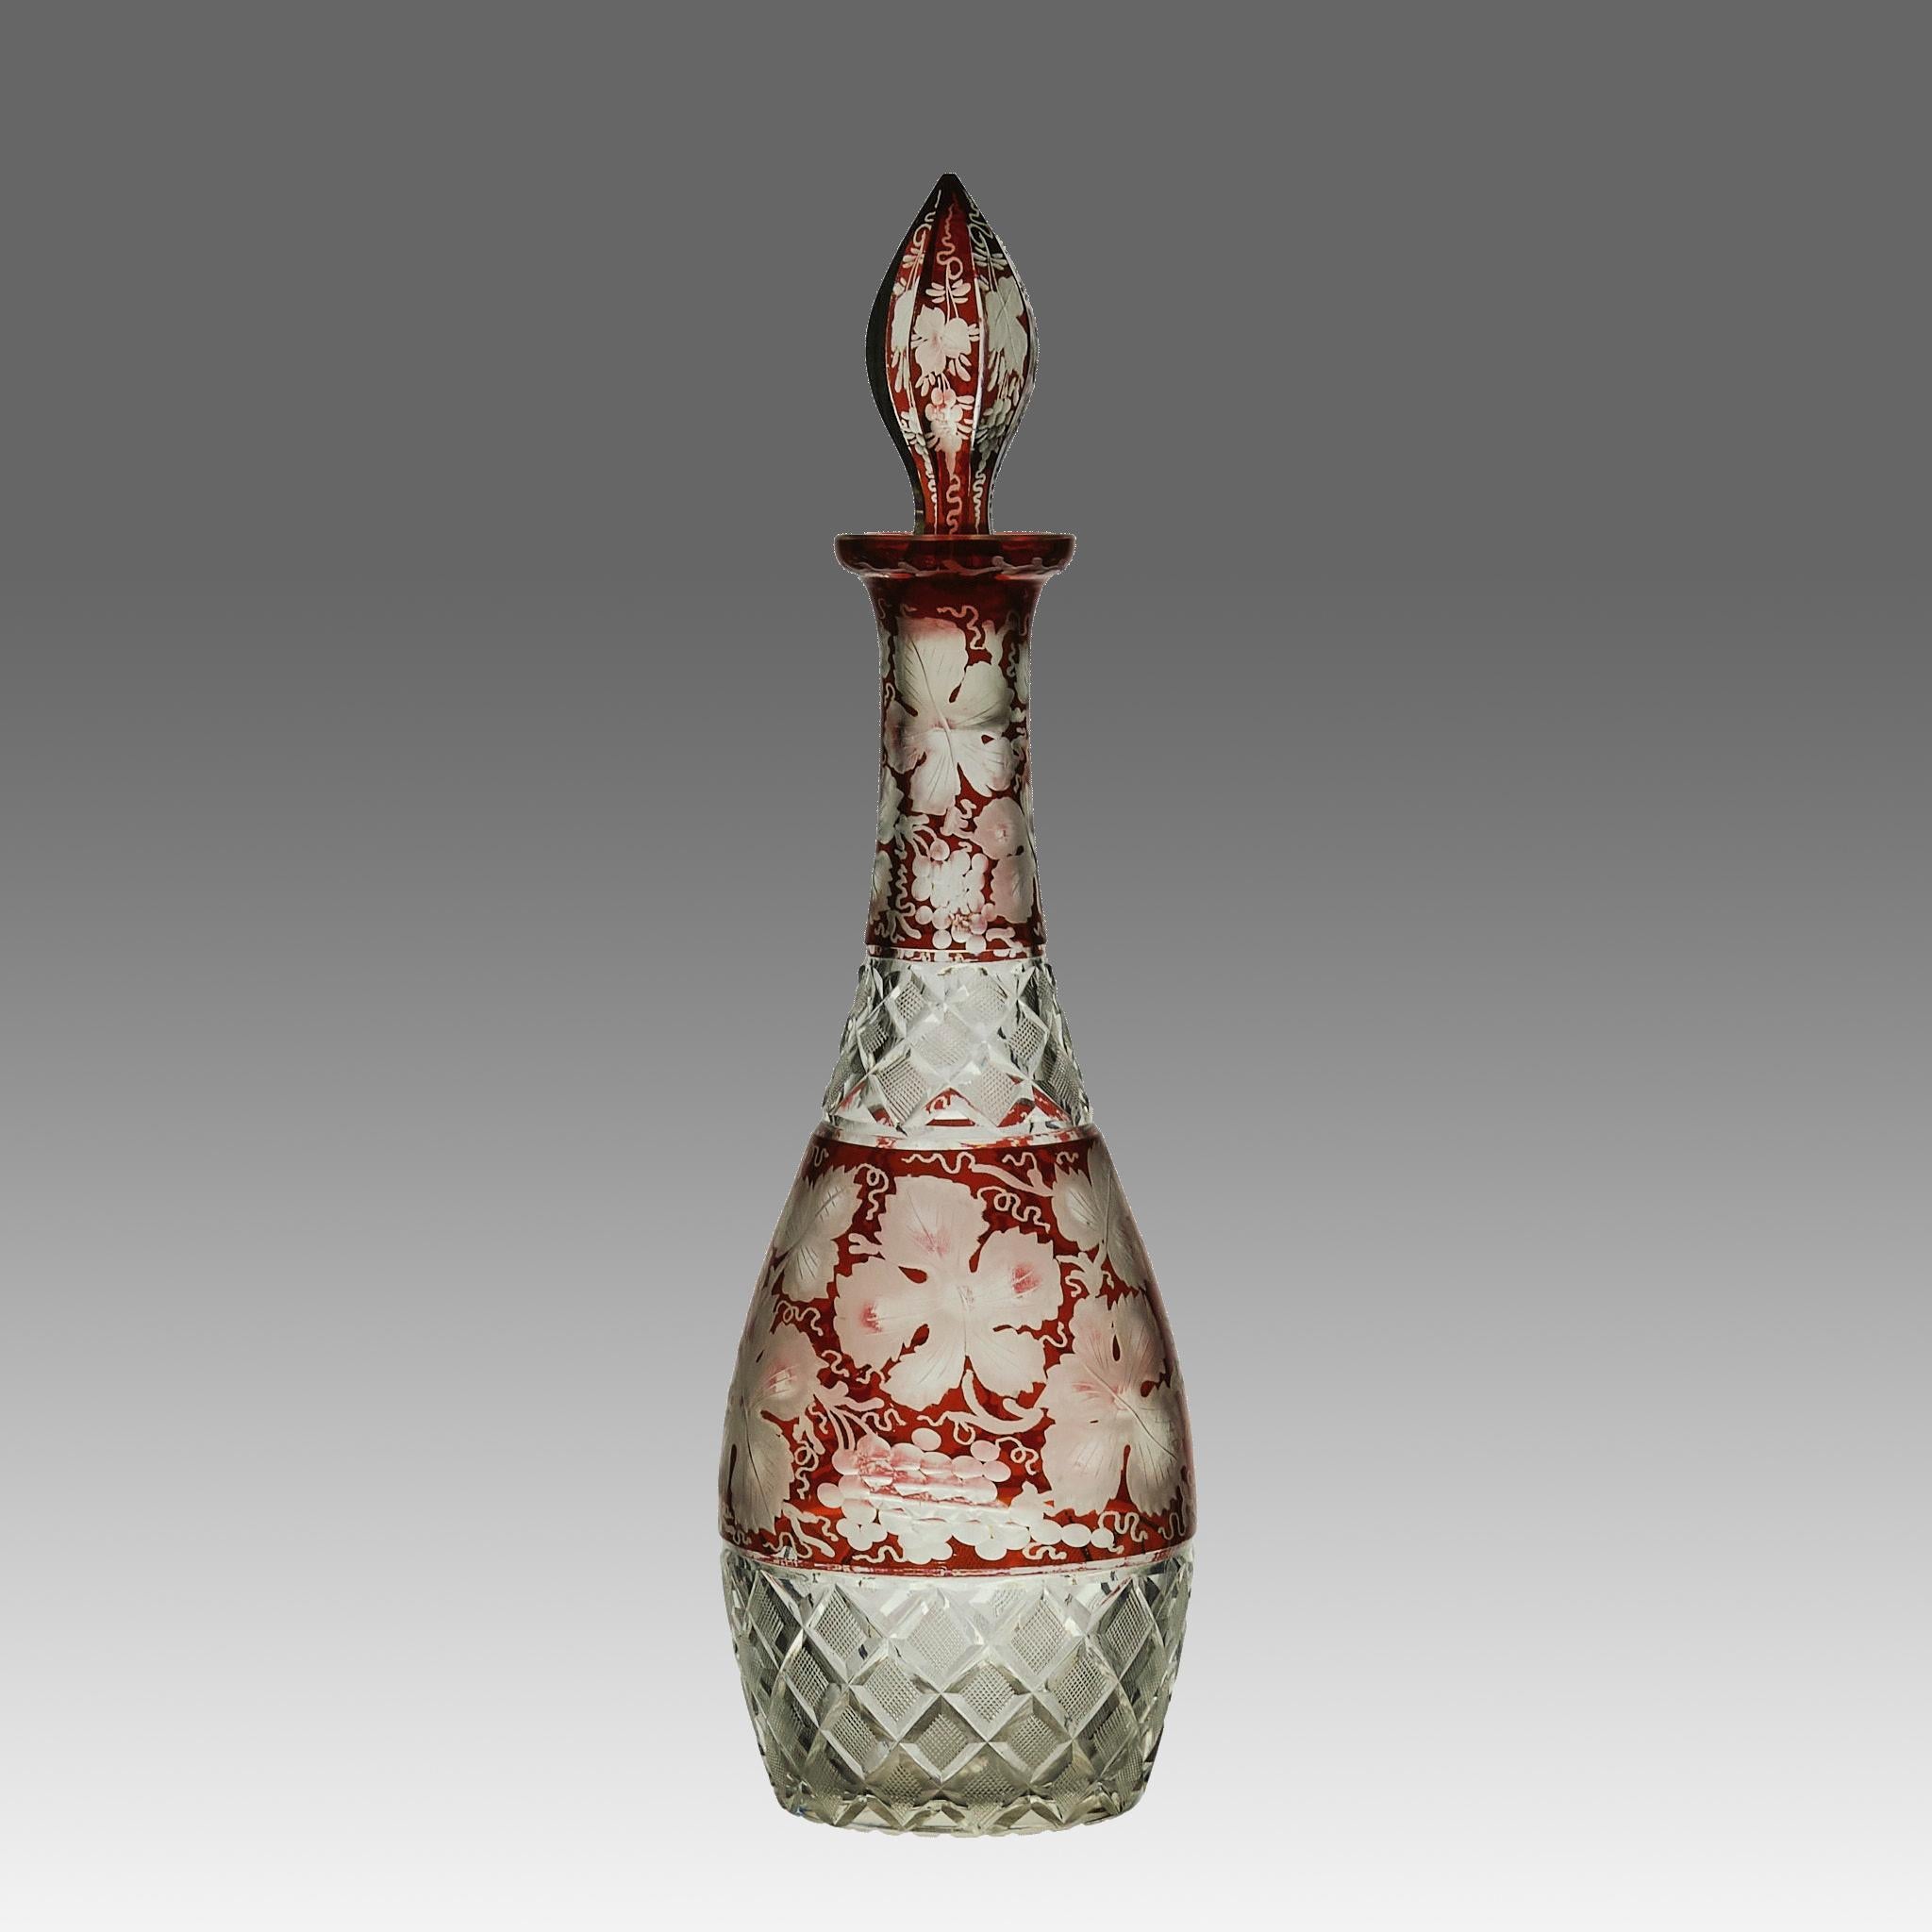 Une jolie carafe en verre de Bohème du milieu du 20e siècle, d'un rouge profond, gravée de motifs décoratifs, avec une base taillée en étoile et un bouchon assorti.

INFORMATIONS COMPLÉMENTAIRES
Hauteur :                                      33 cm  